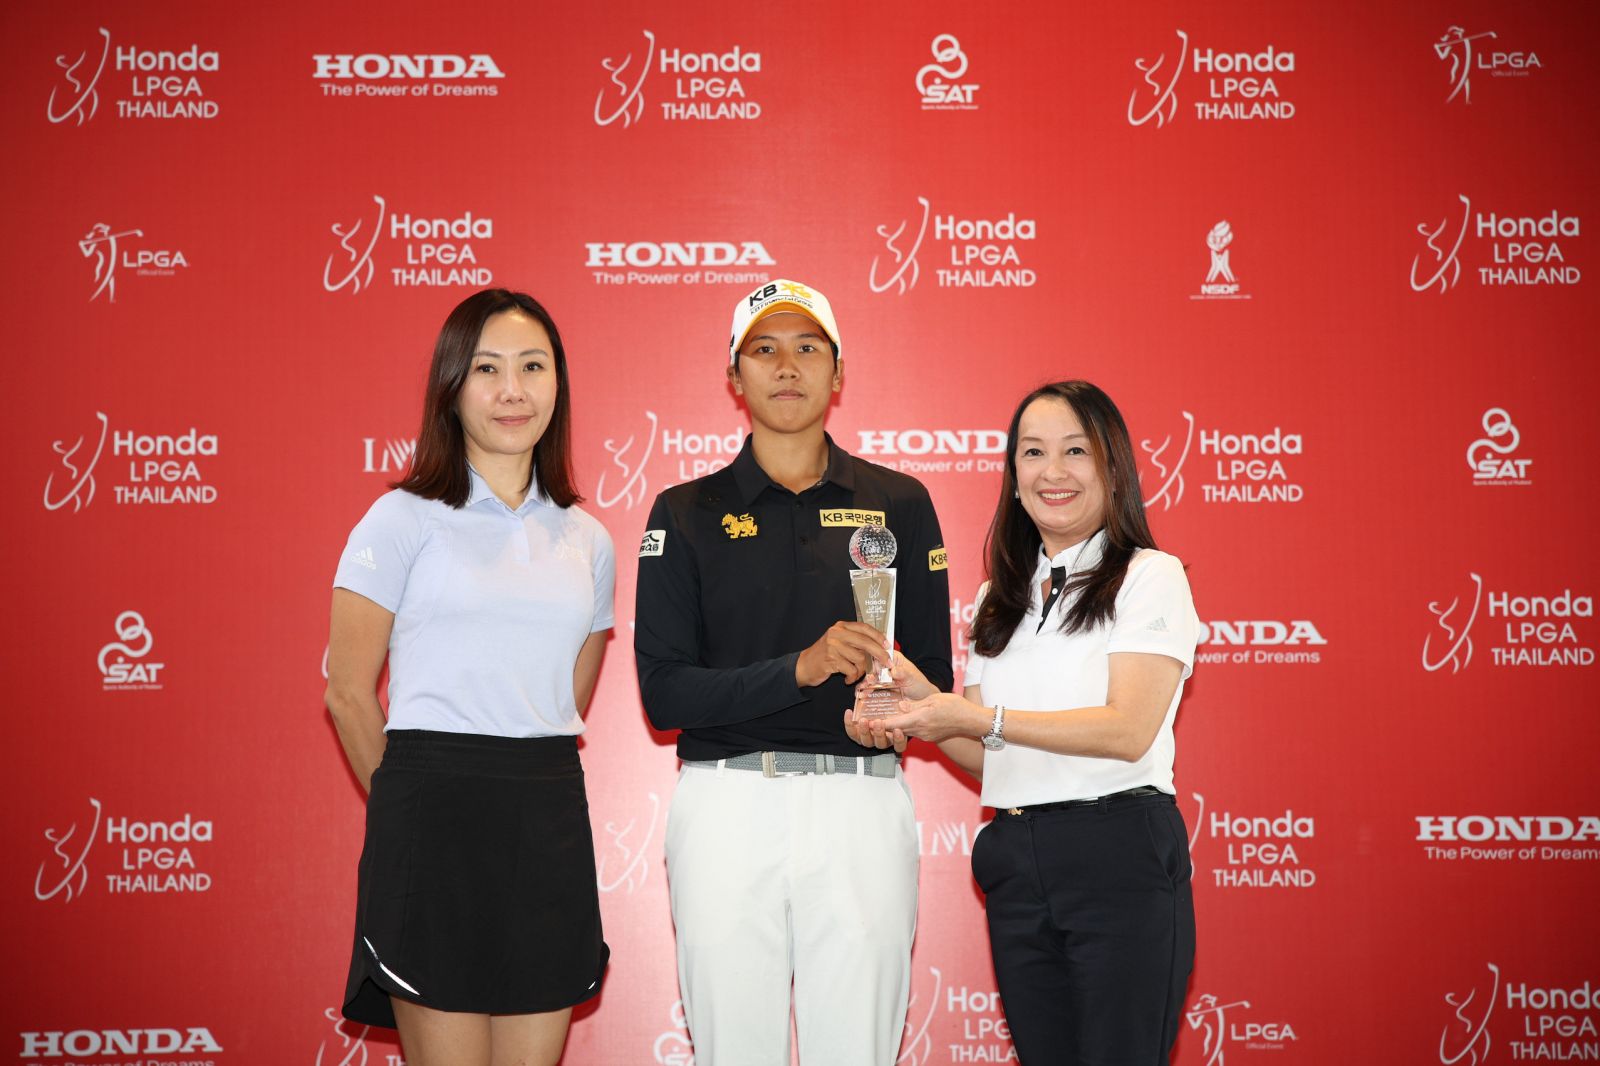 Honda LPGA